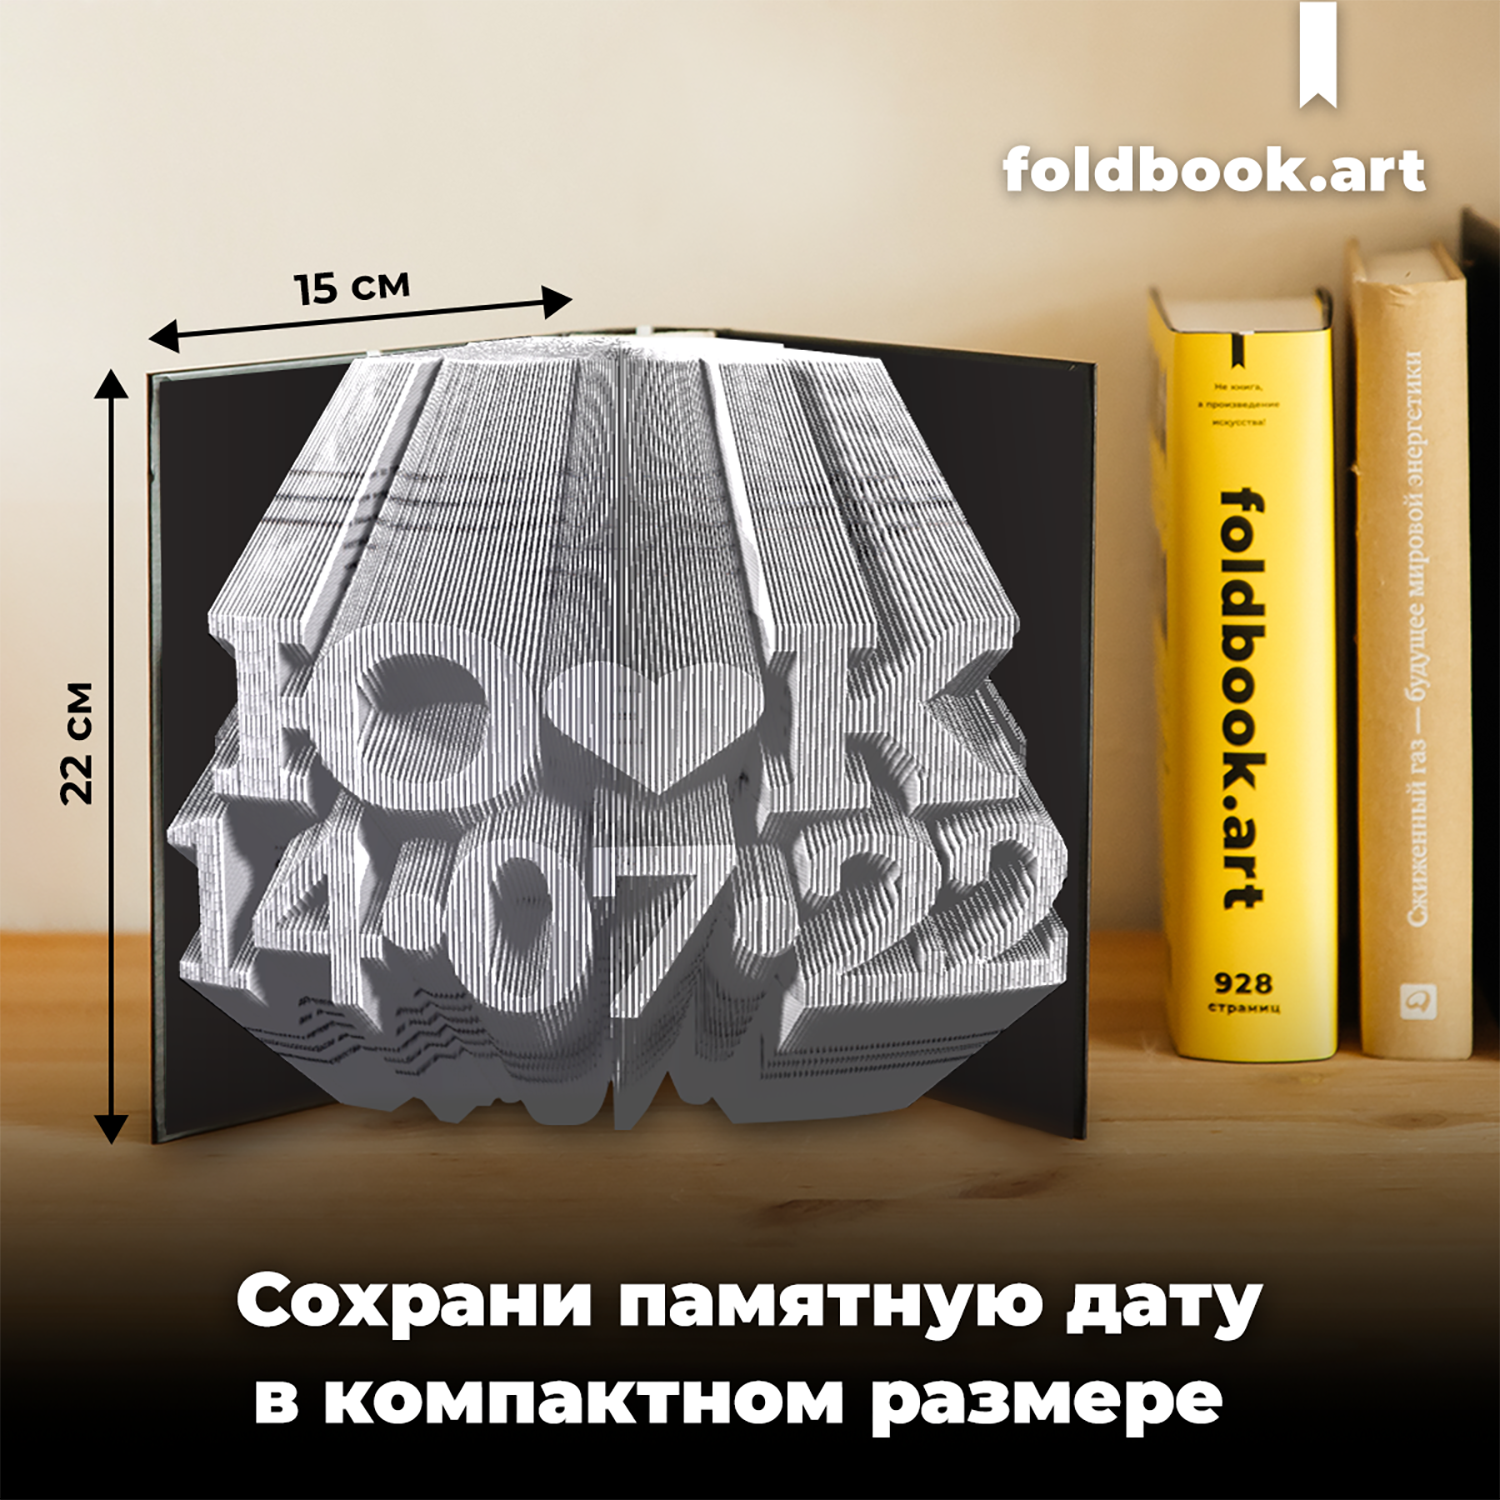 Конструктор Foldbook.art 3D бумажный в виде книги 80008 80008 - фото 10